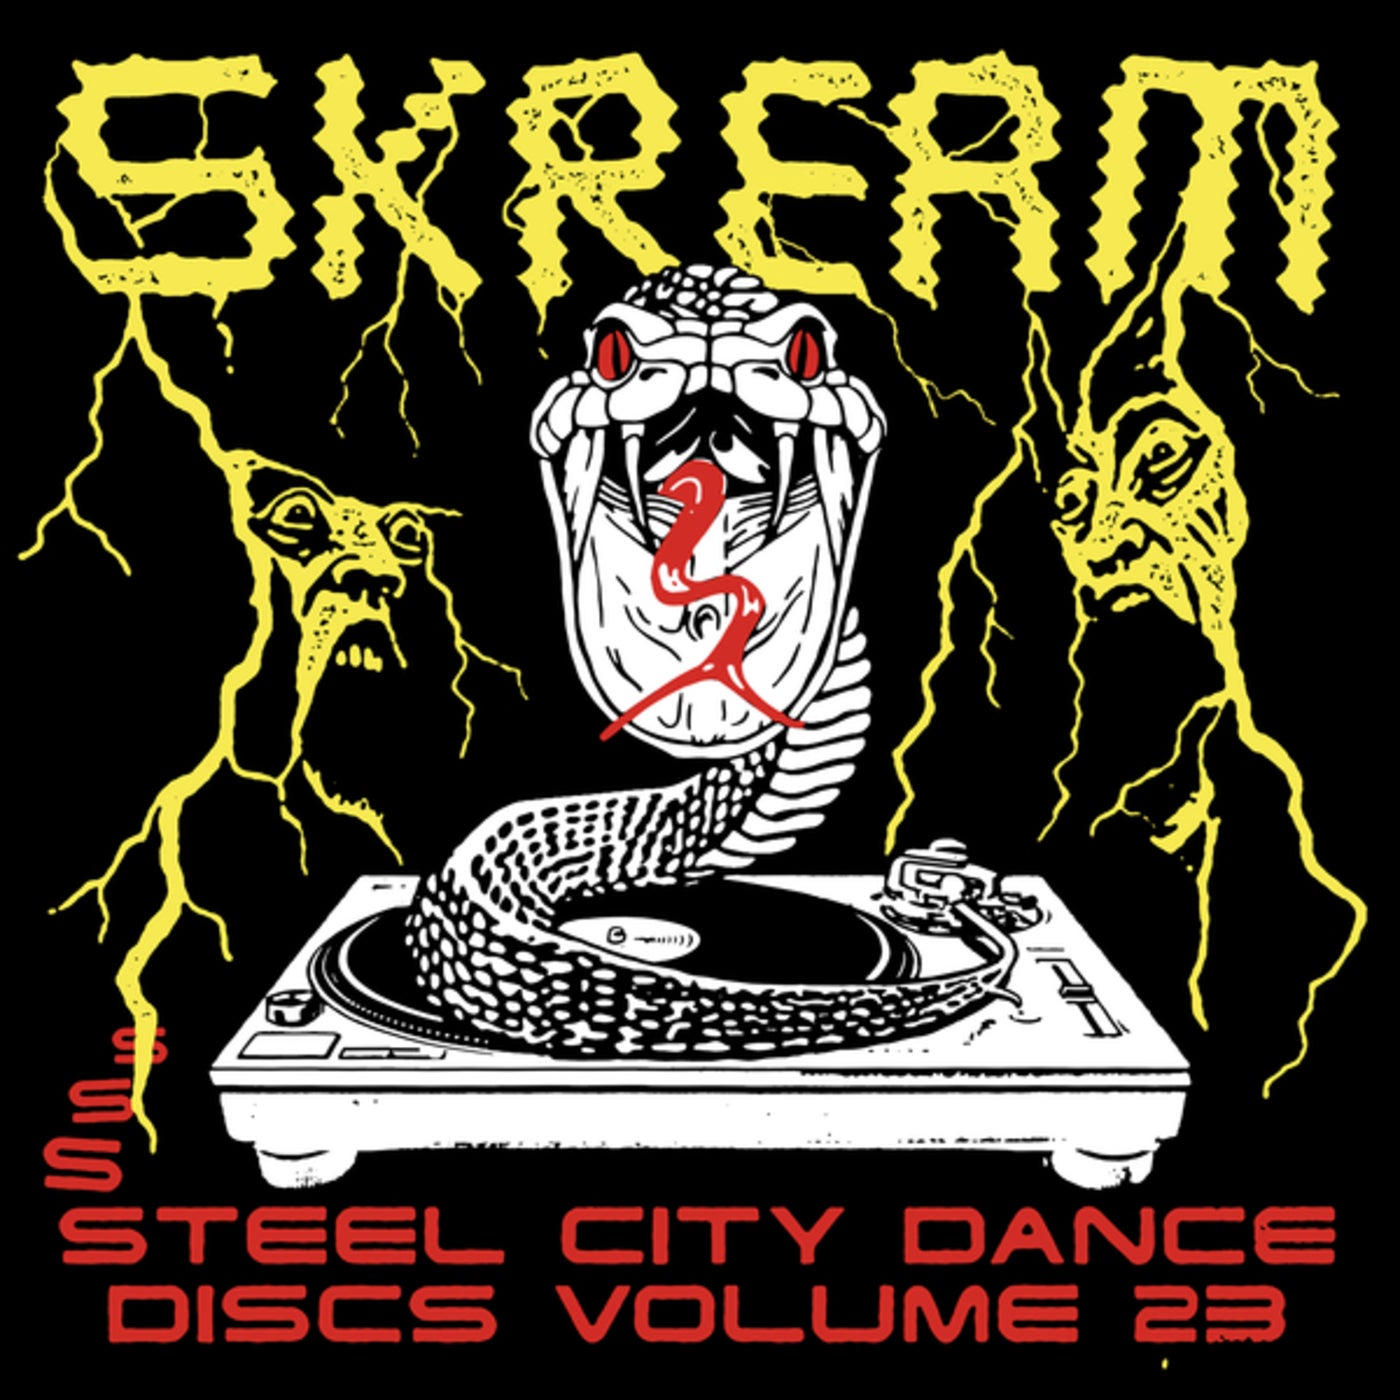 Steel City Dance Discs Volume 23